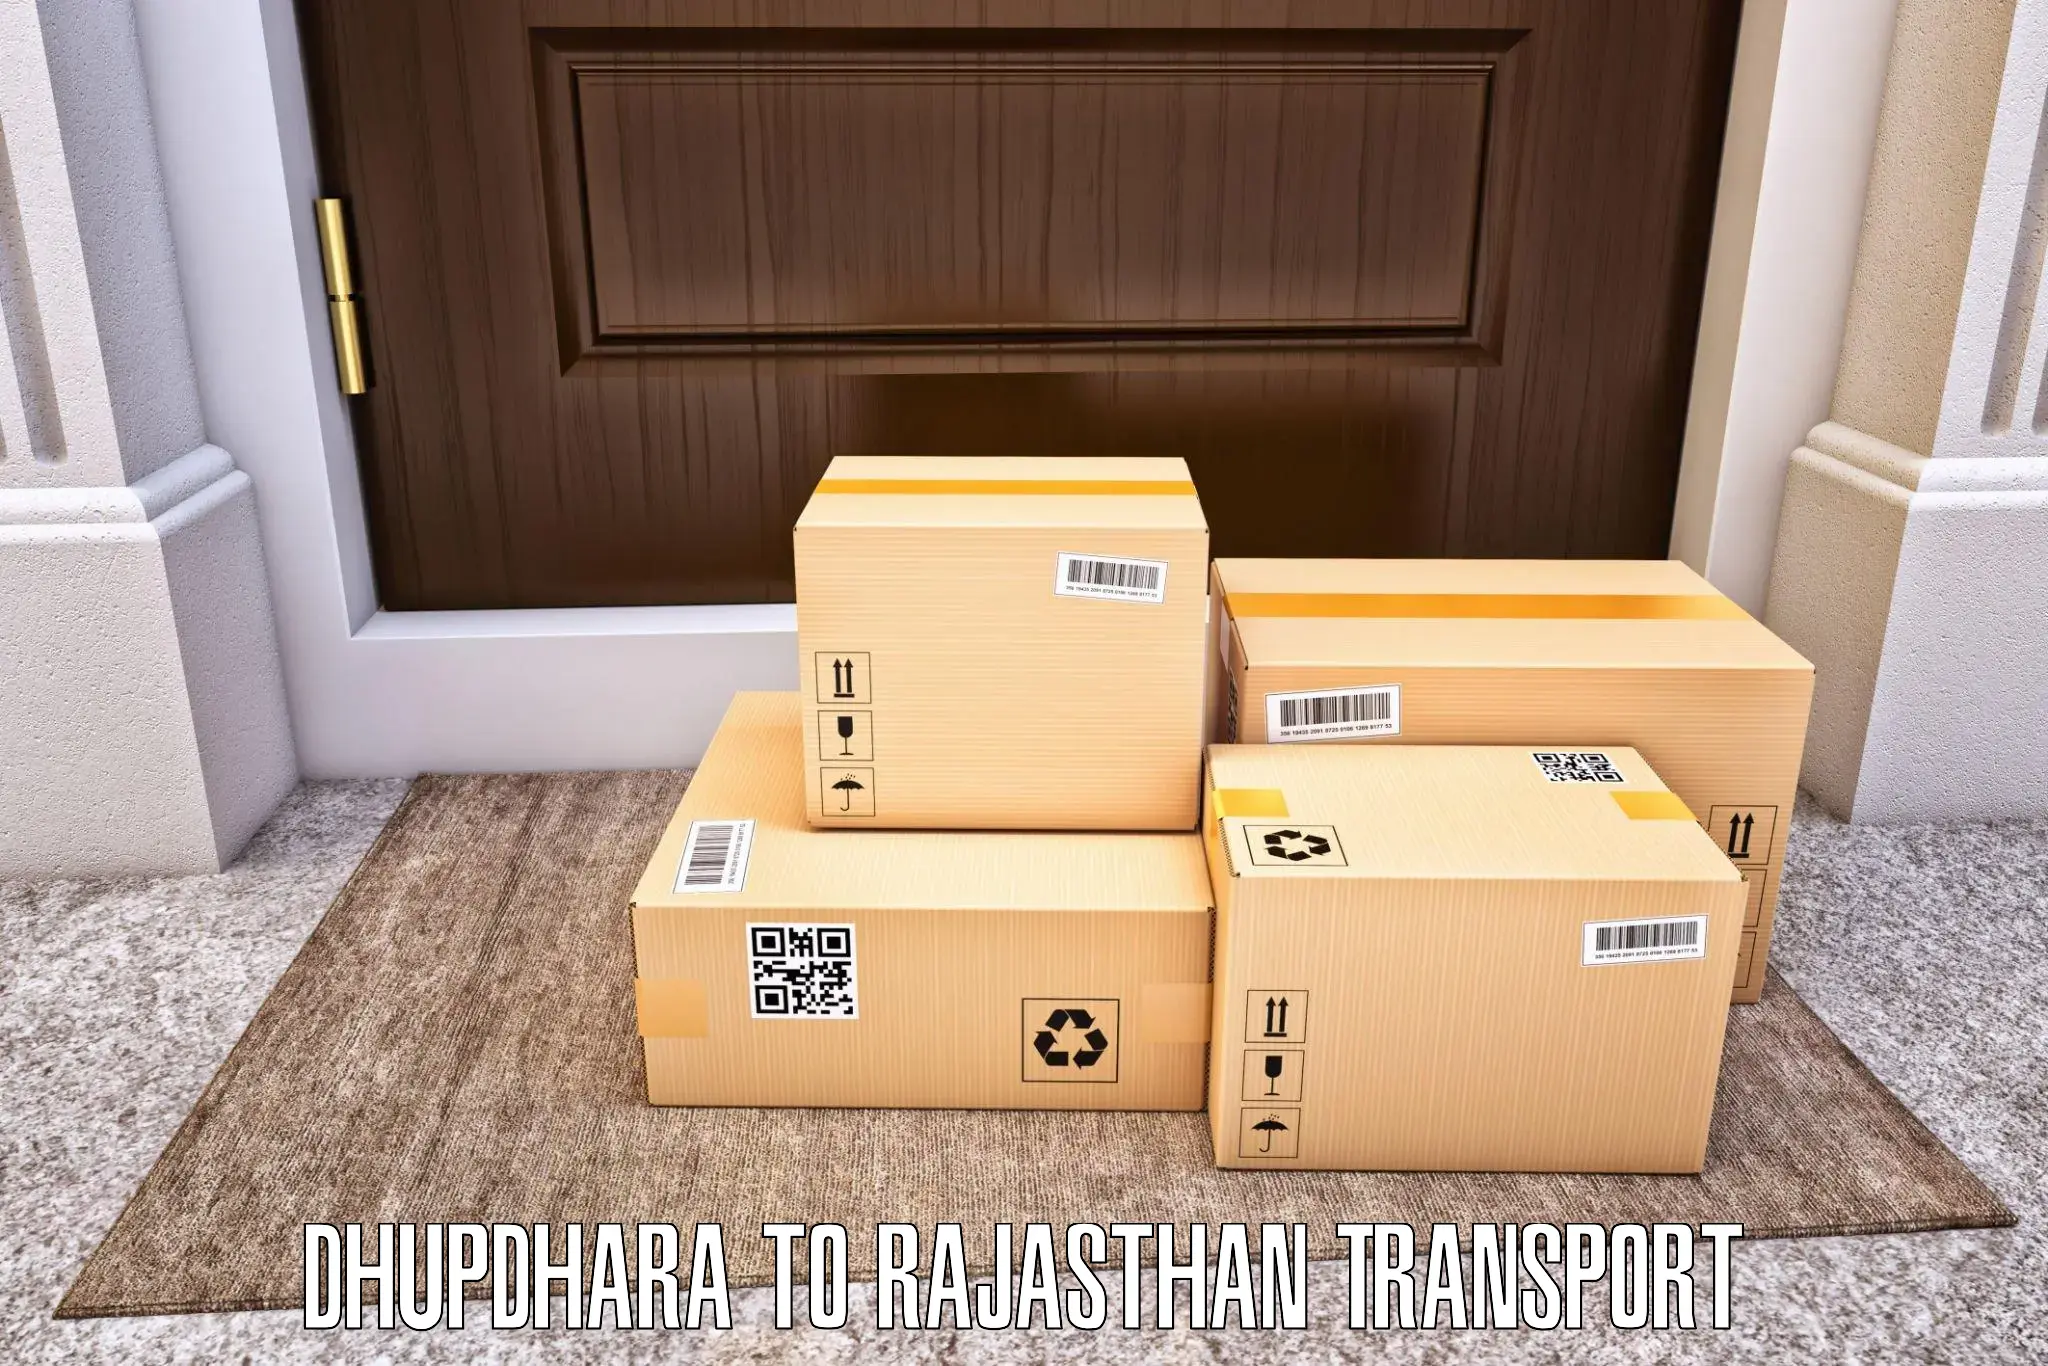 Two wheeler parcel service Dhupdhara to Phalodi